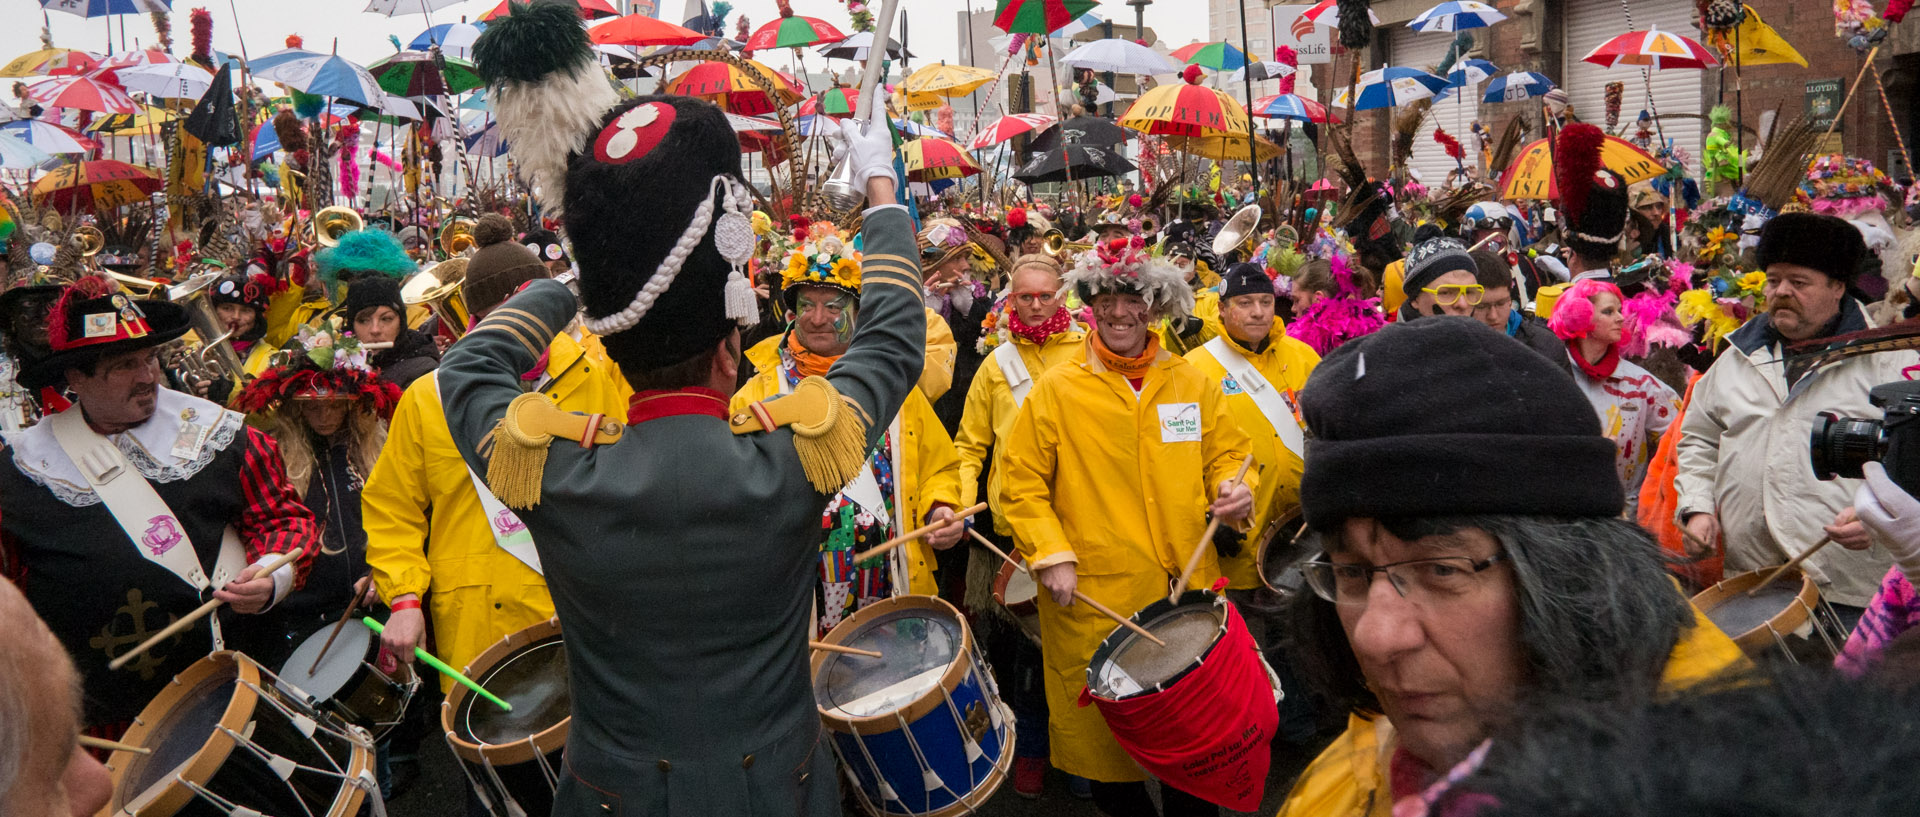 La bande de la Citadelle au carnaval de Dunkerque.